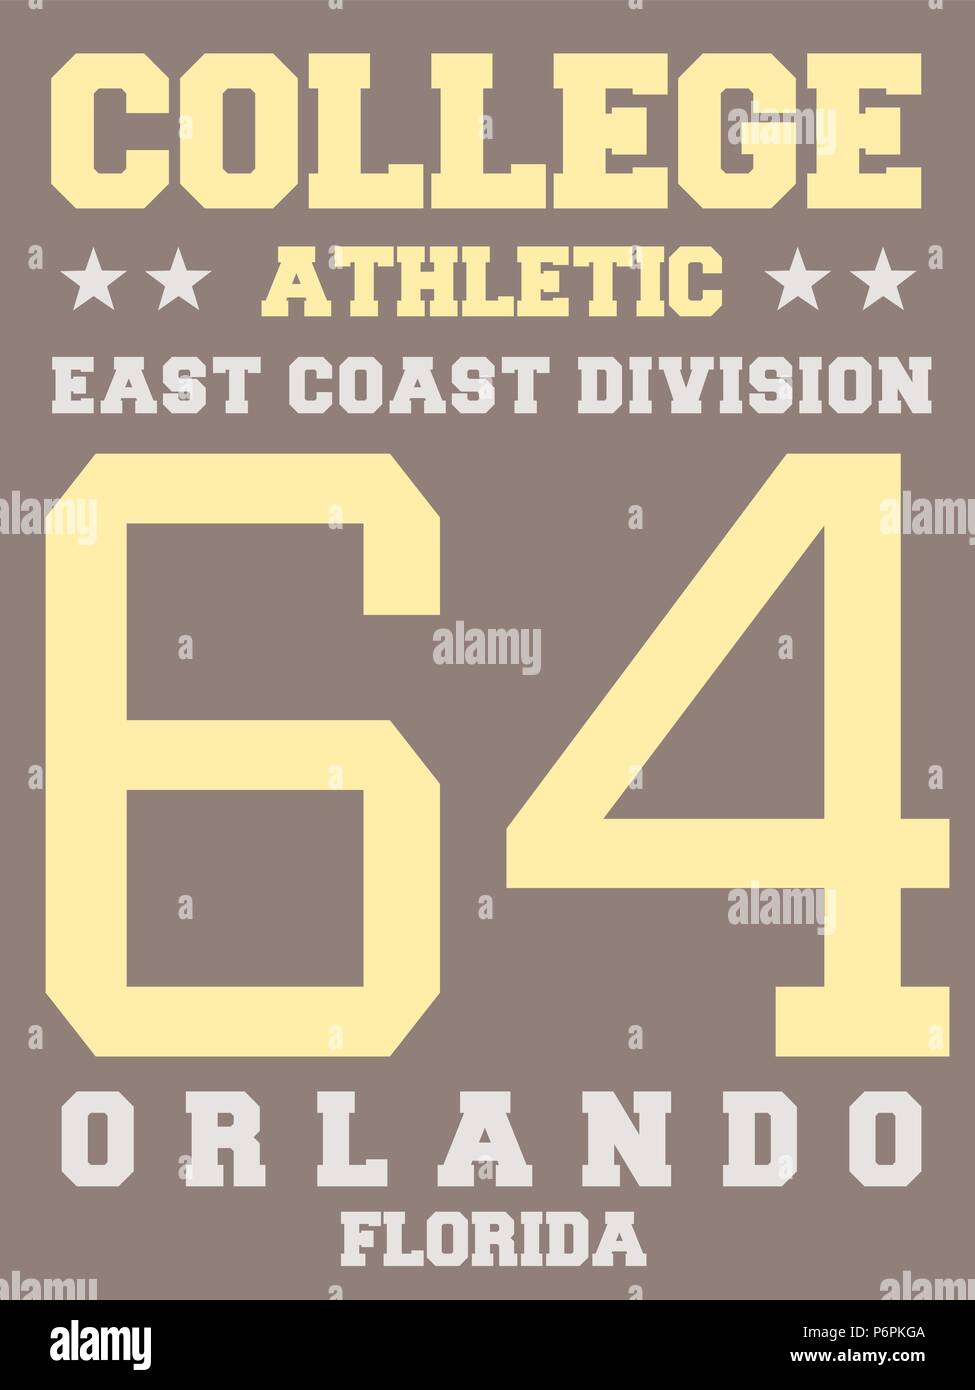 Sports Team jersey design - athletic t-shirt. Costa orientale - Orlando, Florida. Illustrazione Vettoriale